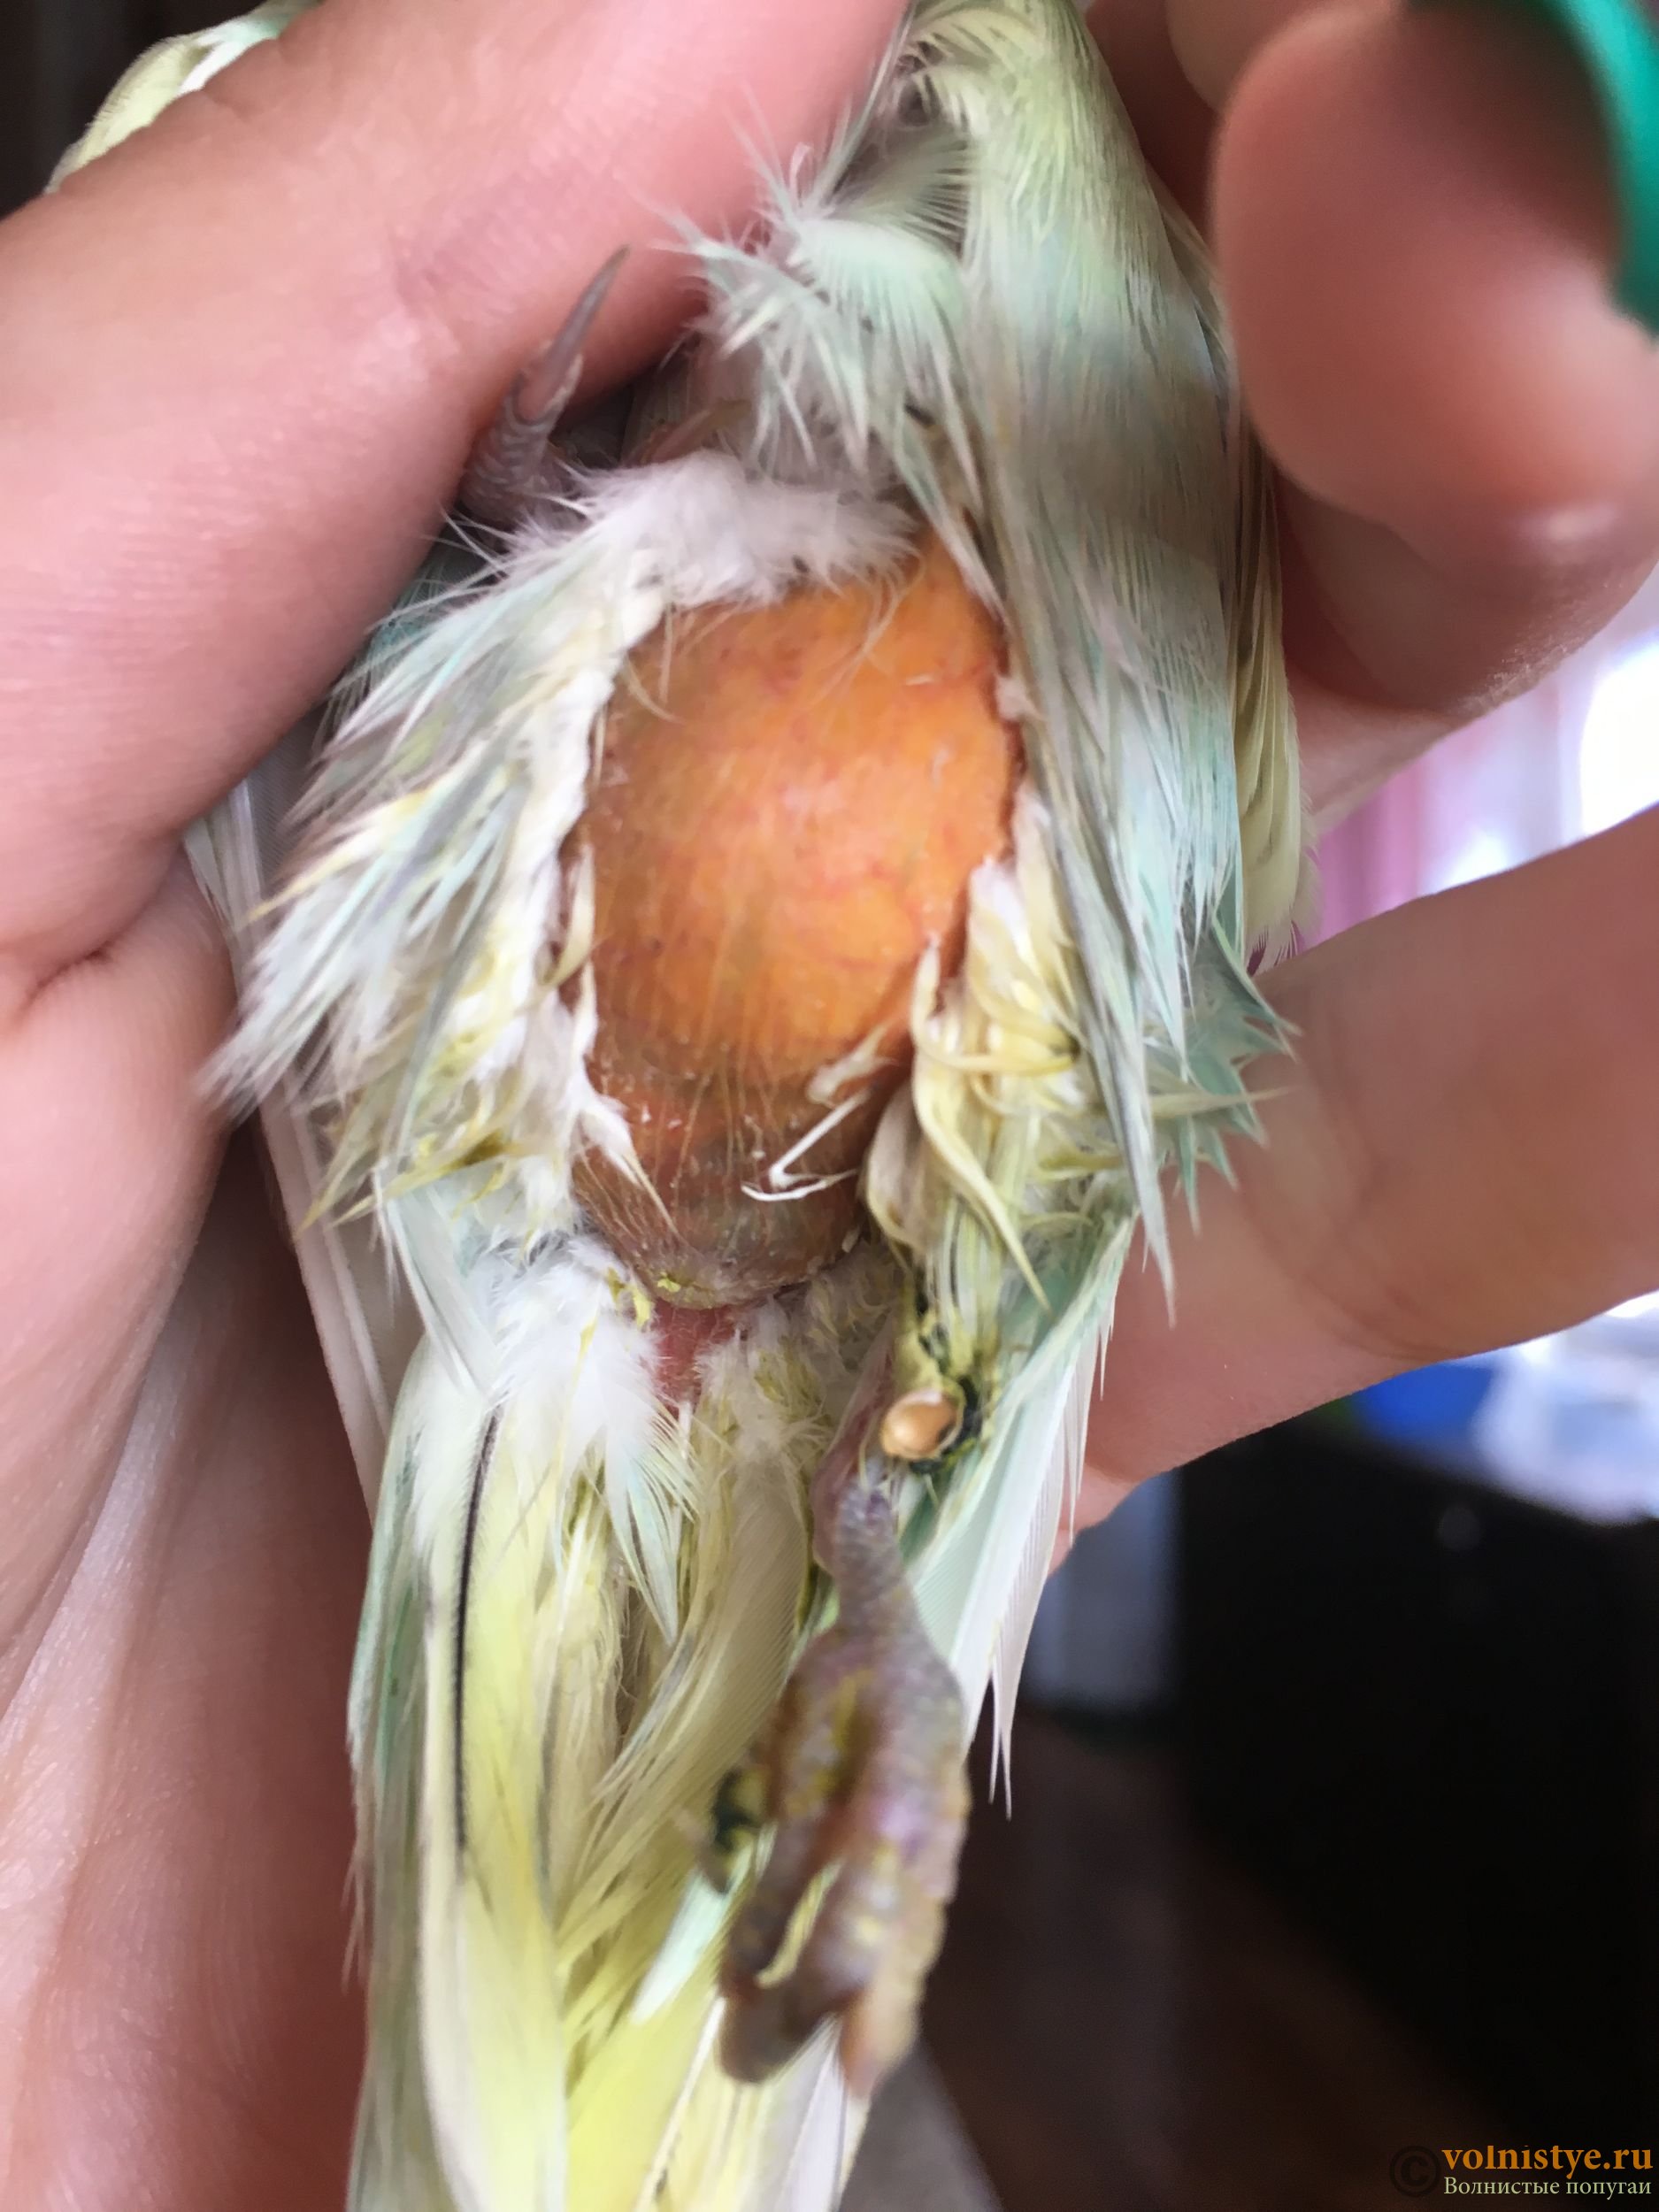 Болезни попугаев корелла: симптомы и лечение основных заболеваний